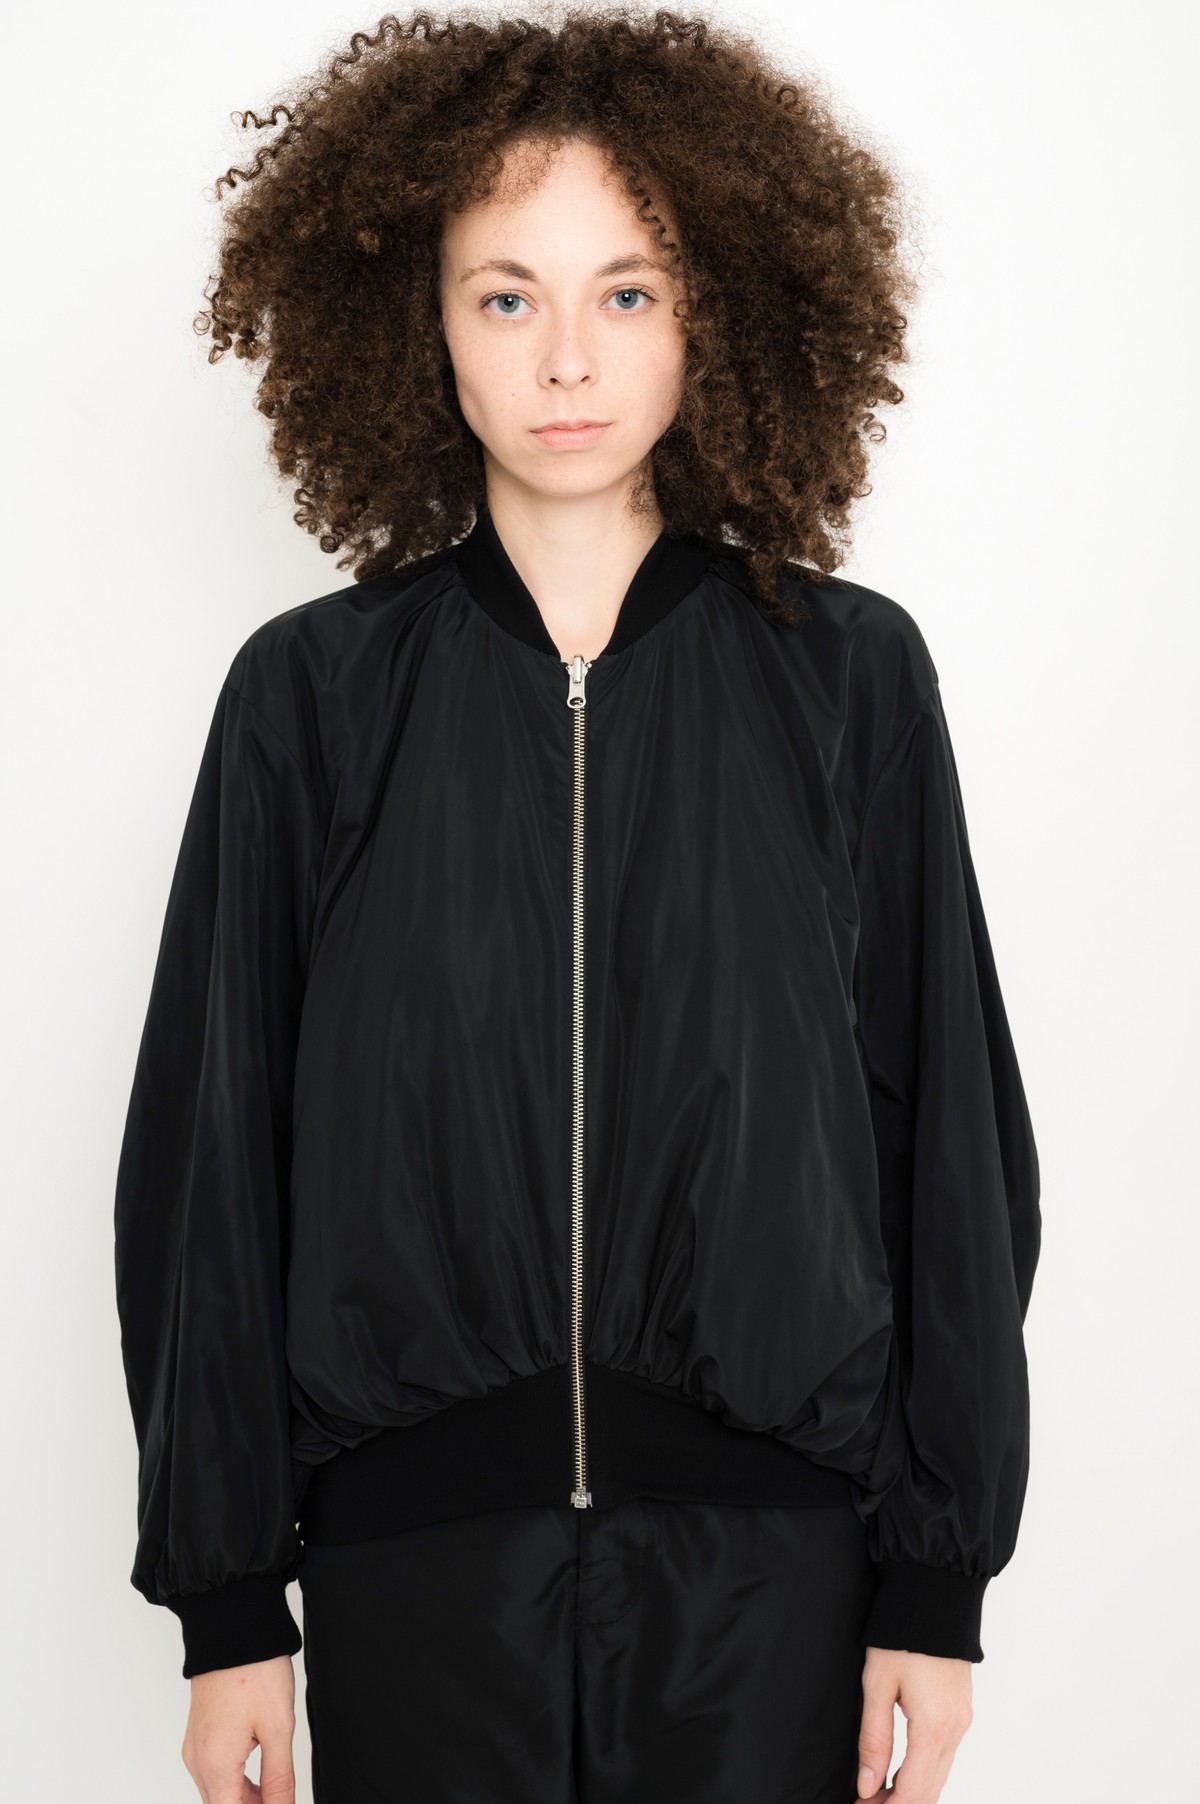 jaqueta reversível bicolor | bicolor reversible jacket